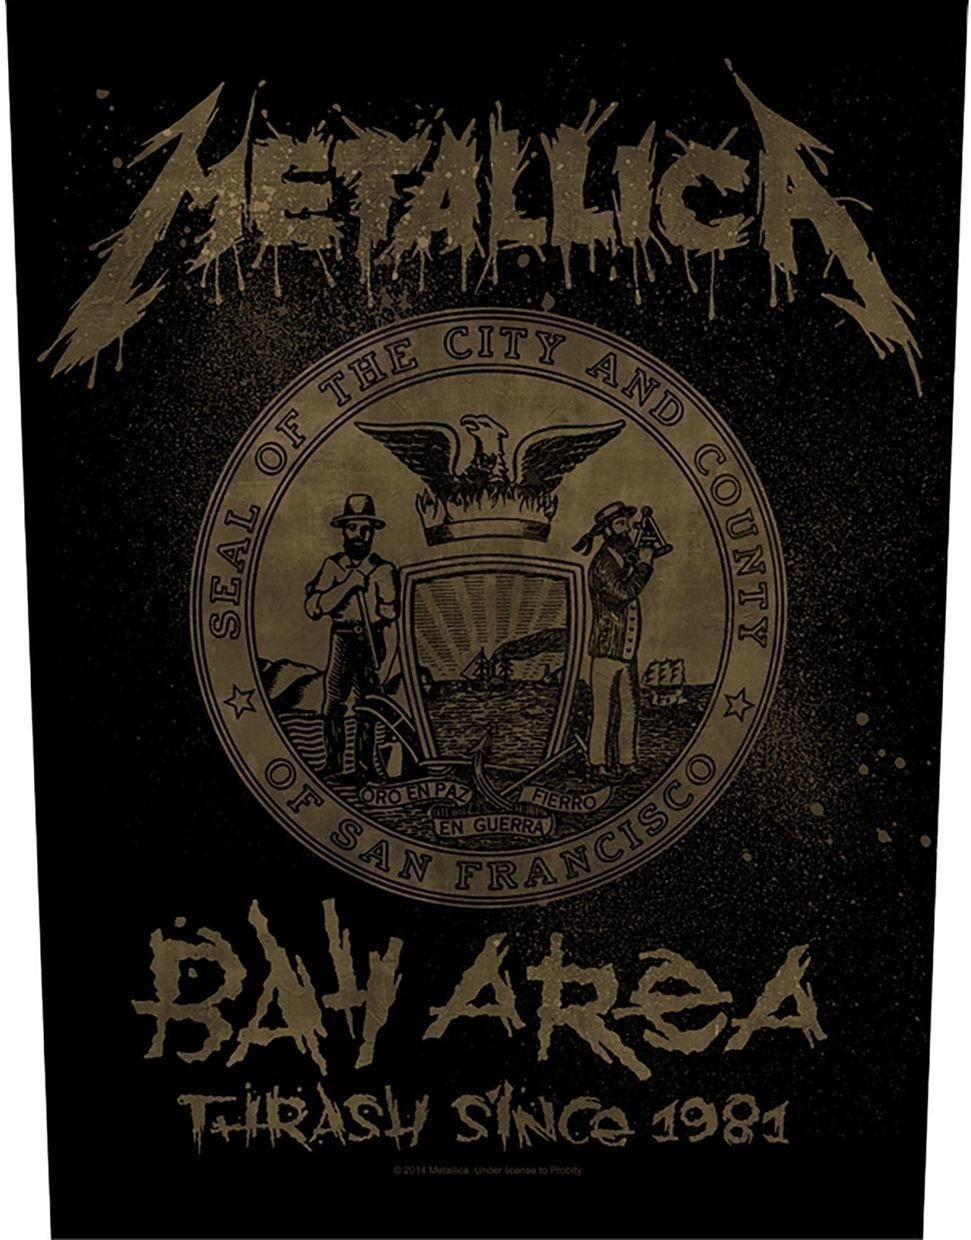 Naszywka Metallica Bay Area Thrash Naszywka